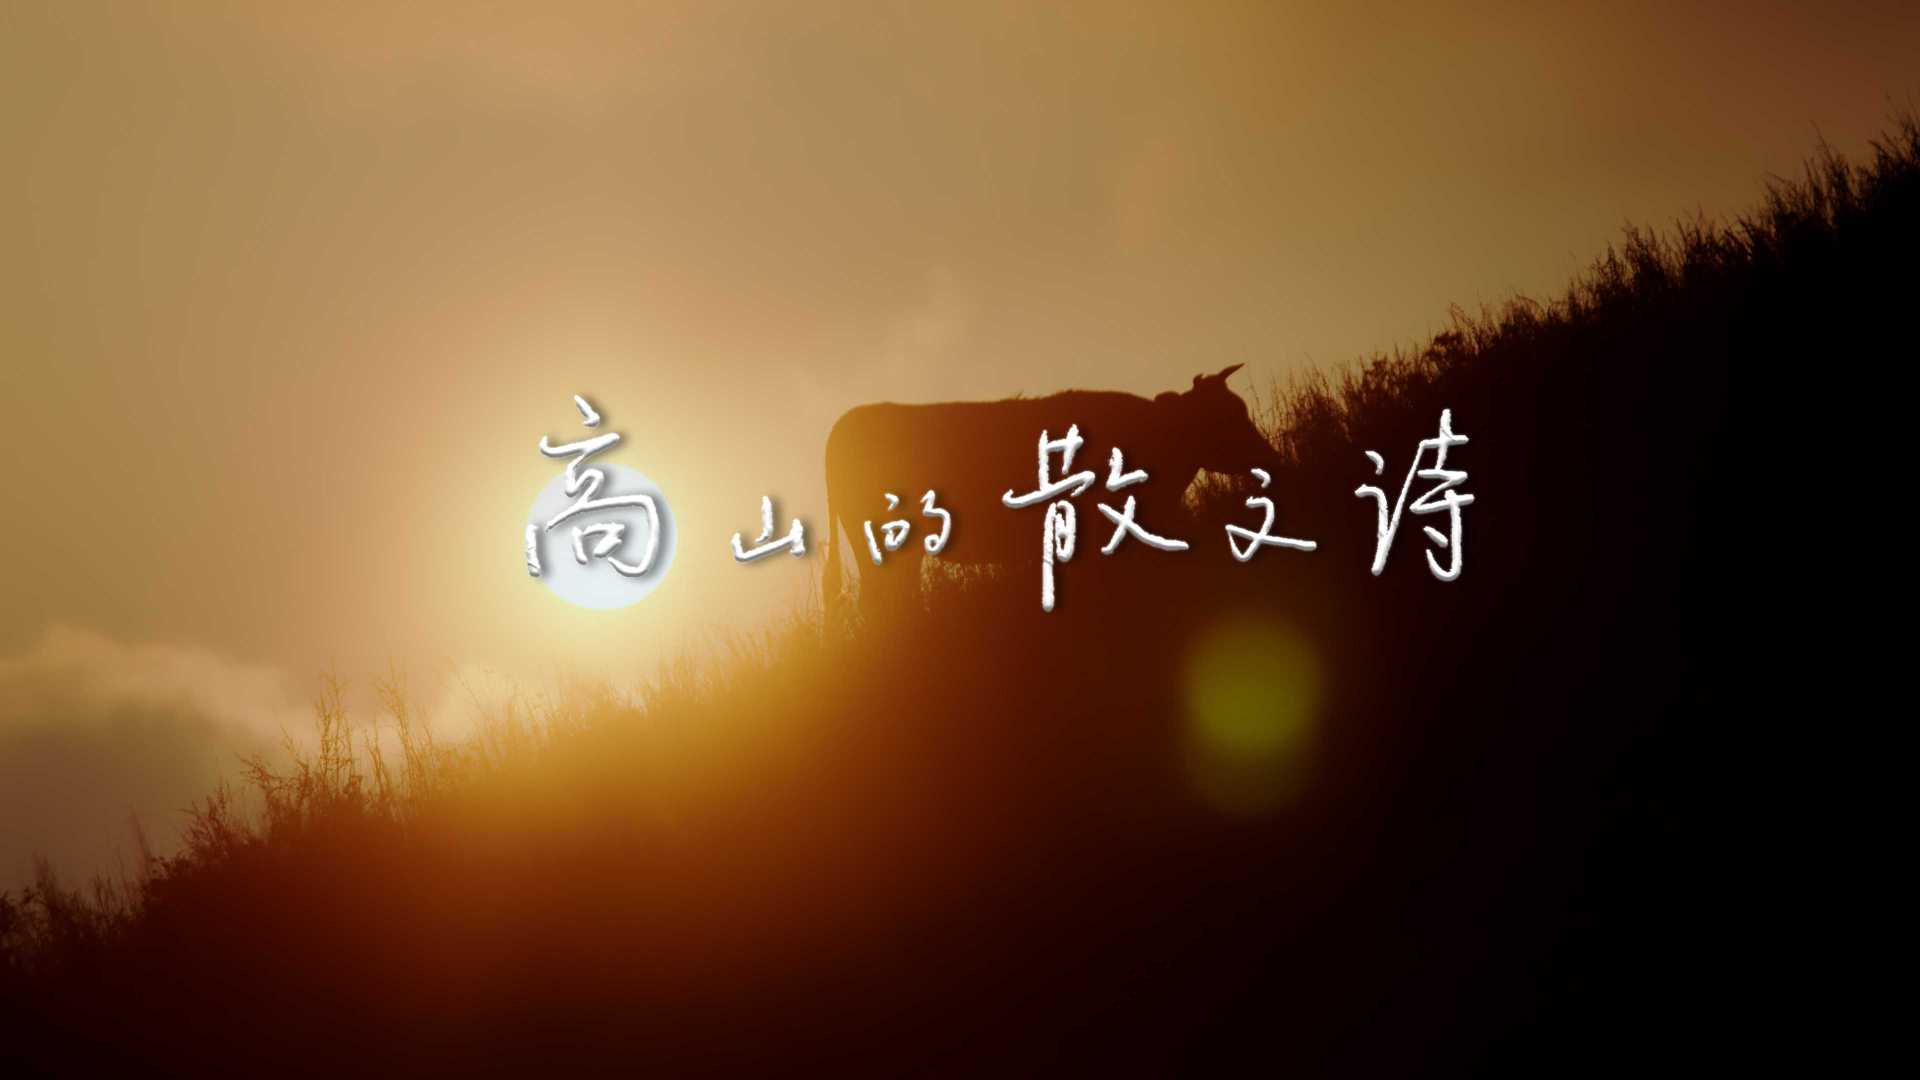 《高山的散文诗》| 明康汇·湖北长阳山蔬品牌片